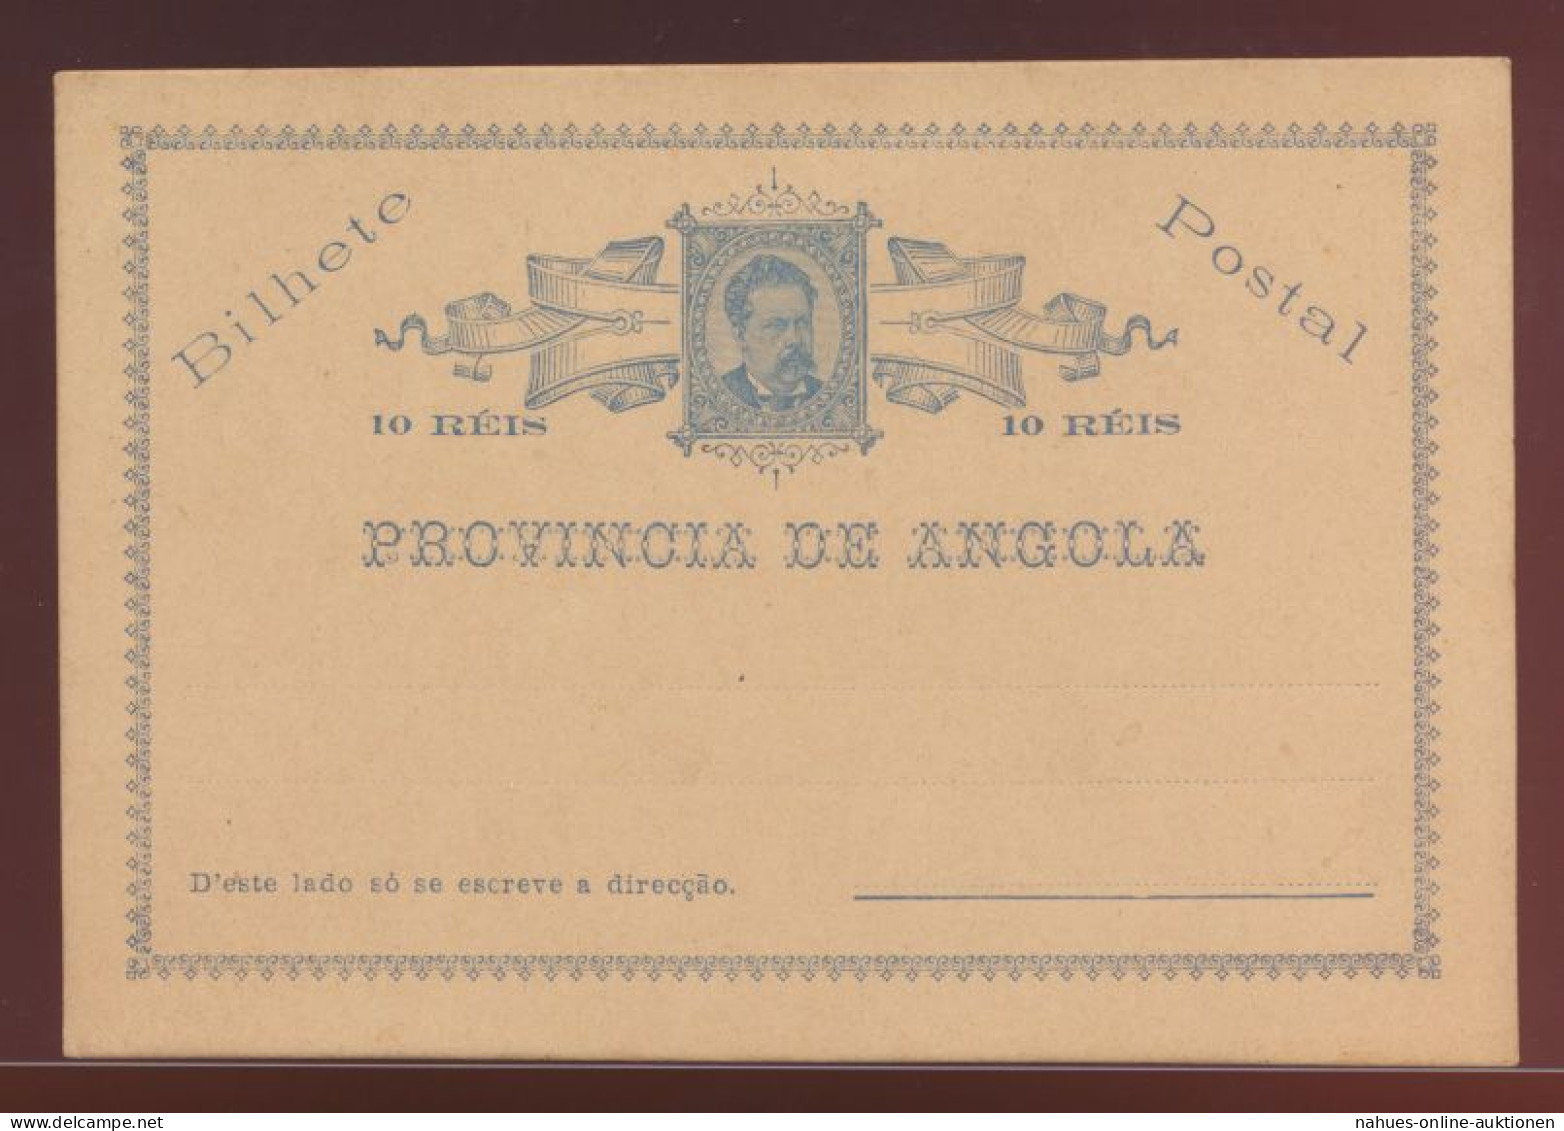 Angola Ganzsache 10 Reis Postal Stationery King Ludwig I - Angola